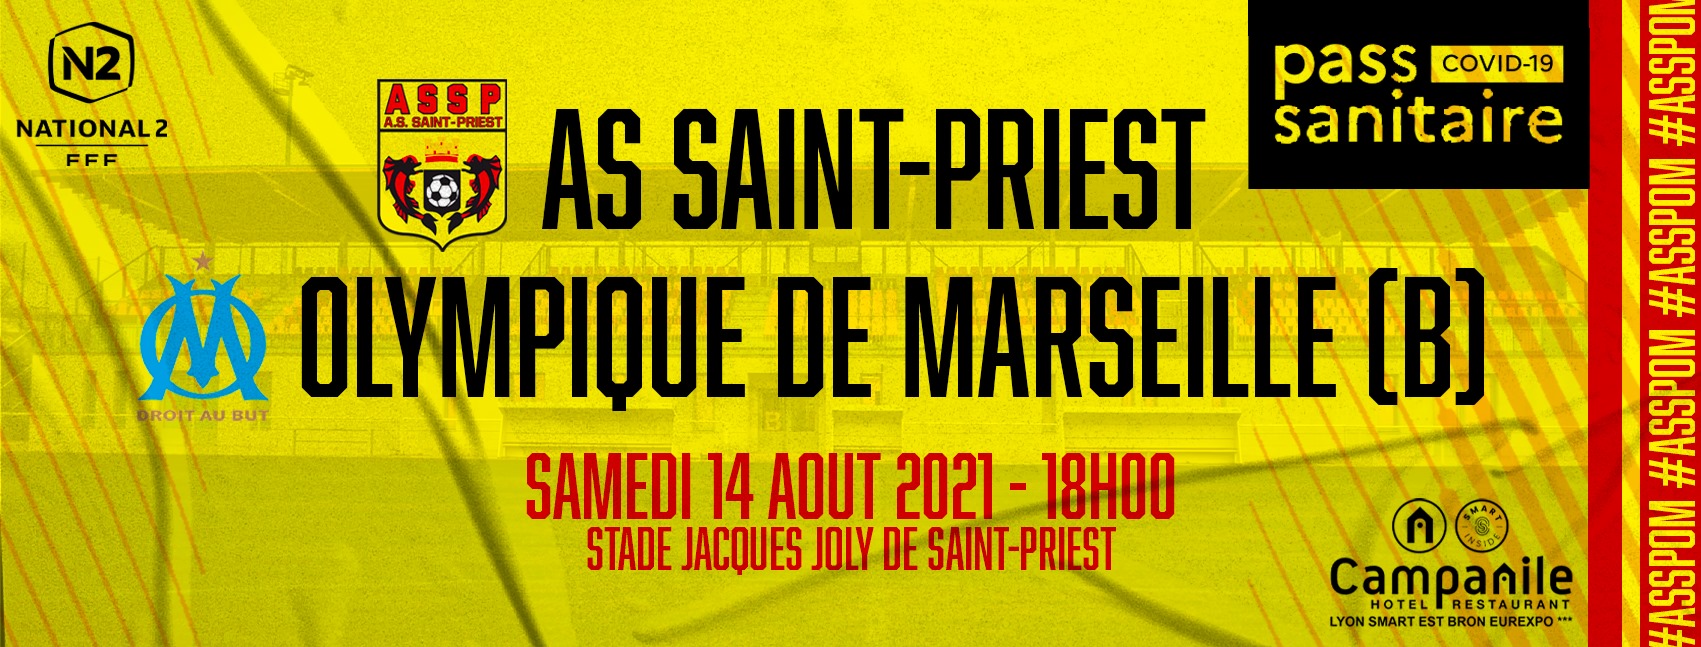 [National 2] Saint-Priest - Olympique de Marseille devrait bien avoir lieu